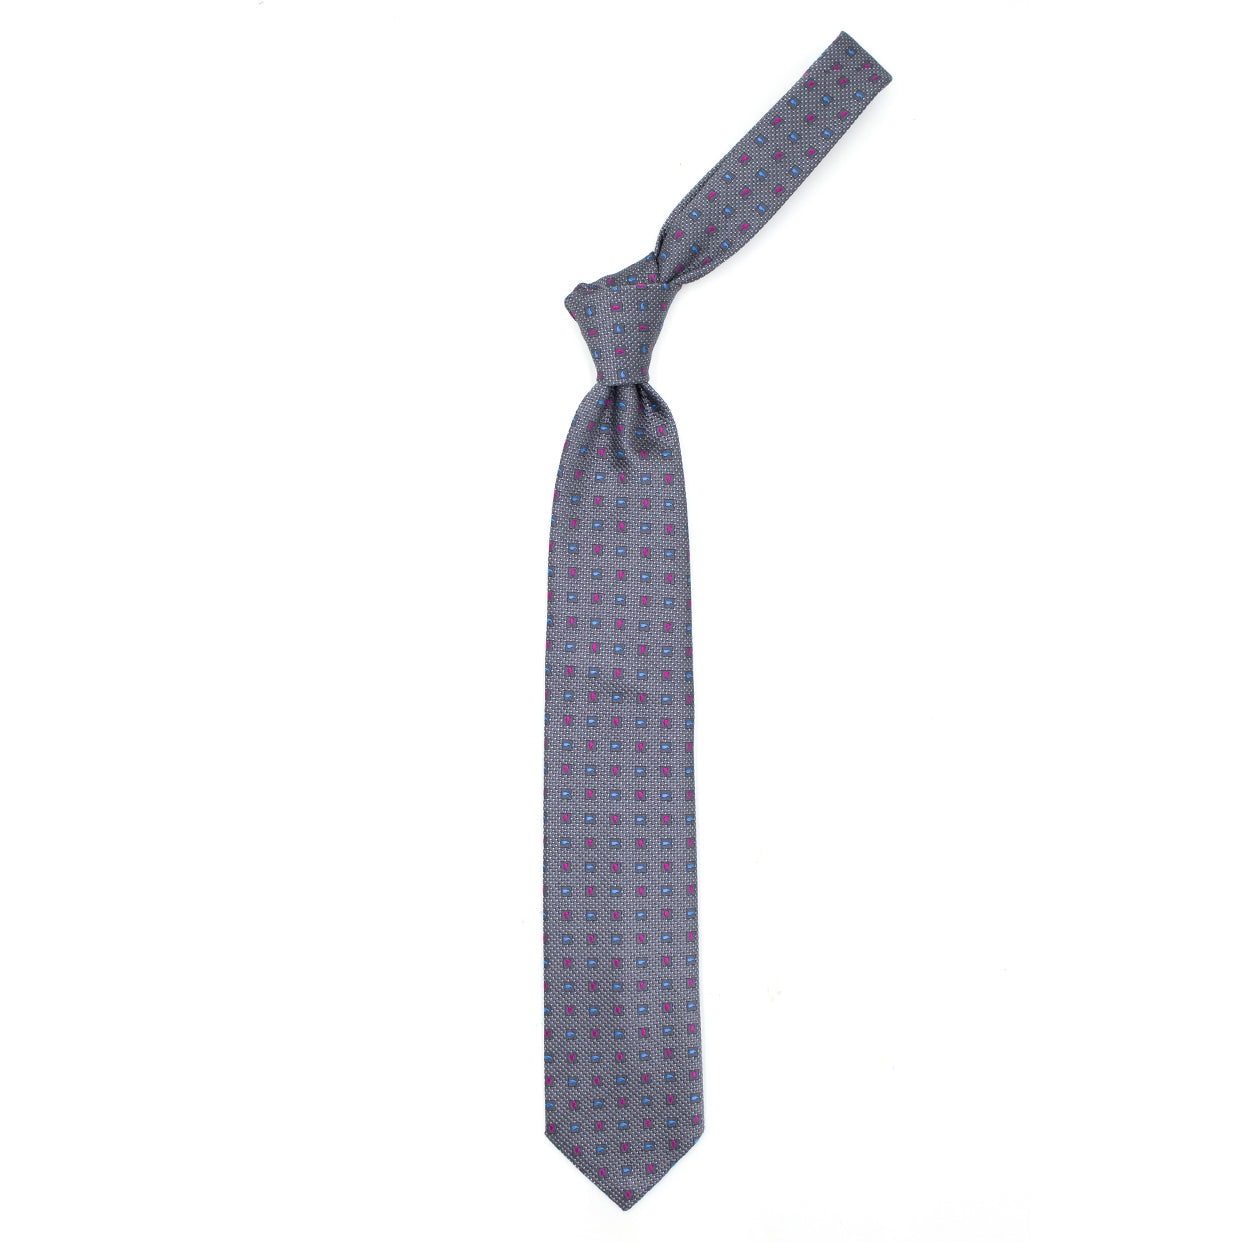 Cravatta grigia con pattern paisley fuxia e azzurri